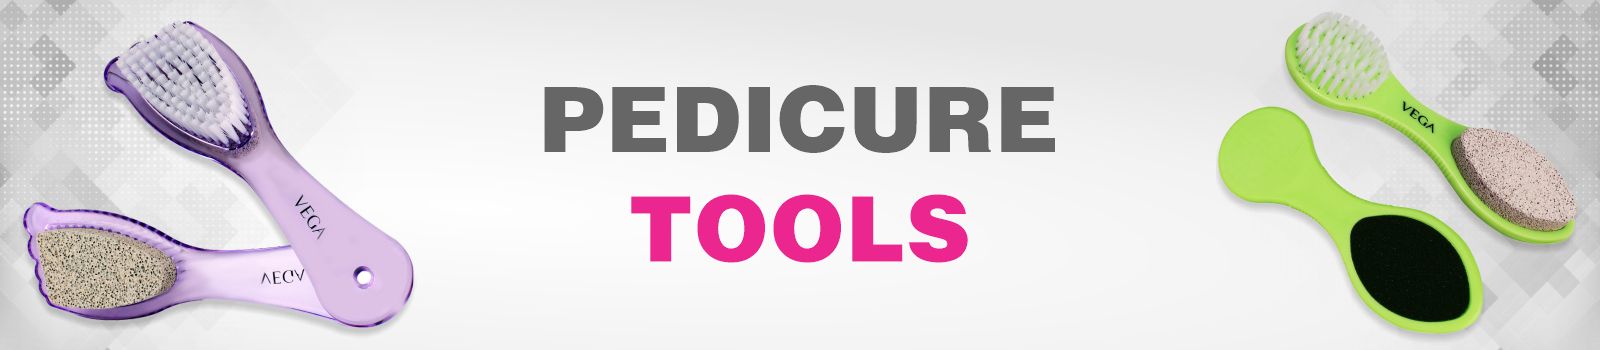 Pedicure Tools